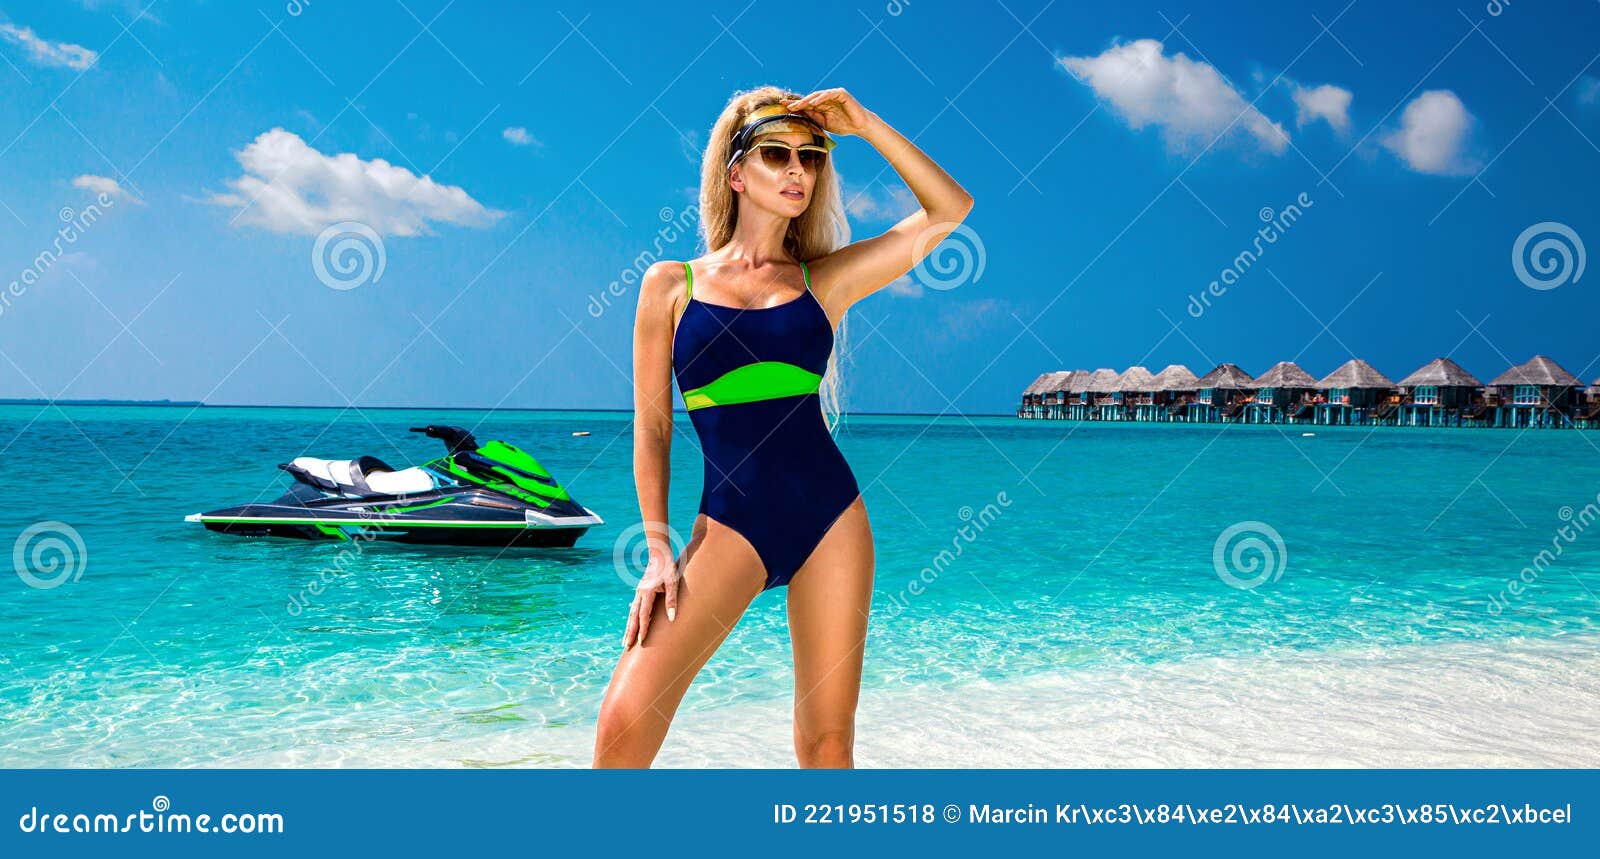 Сексуальные пляжные девушки на водных гидроциклах в бикини и без фото